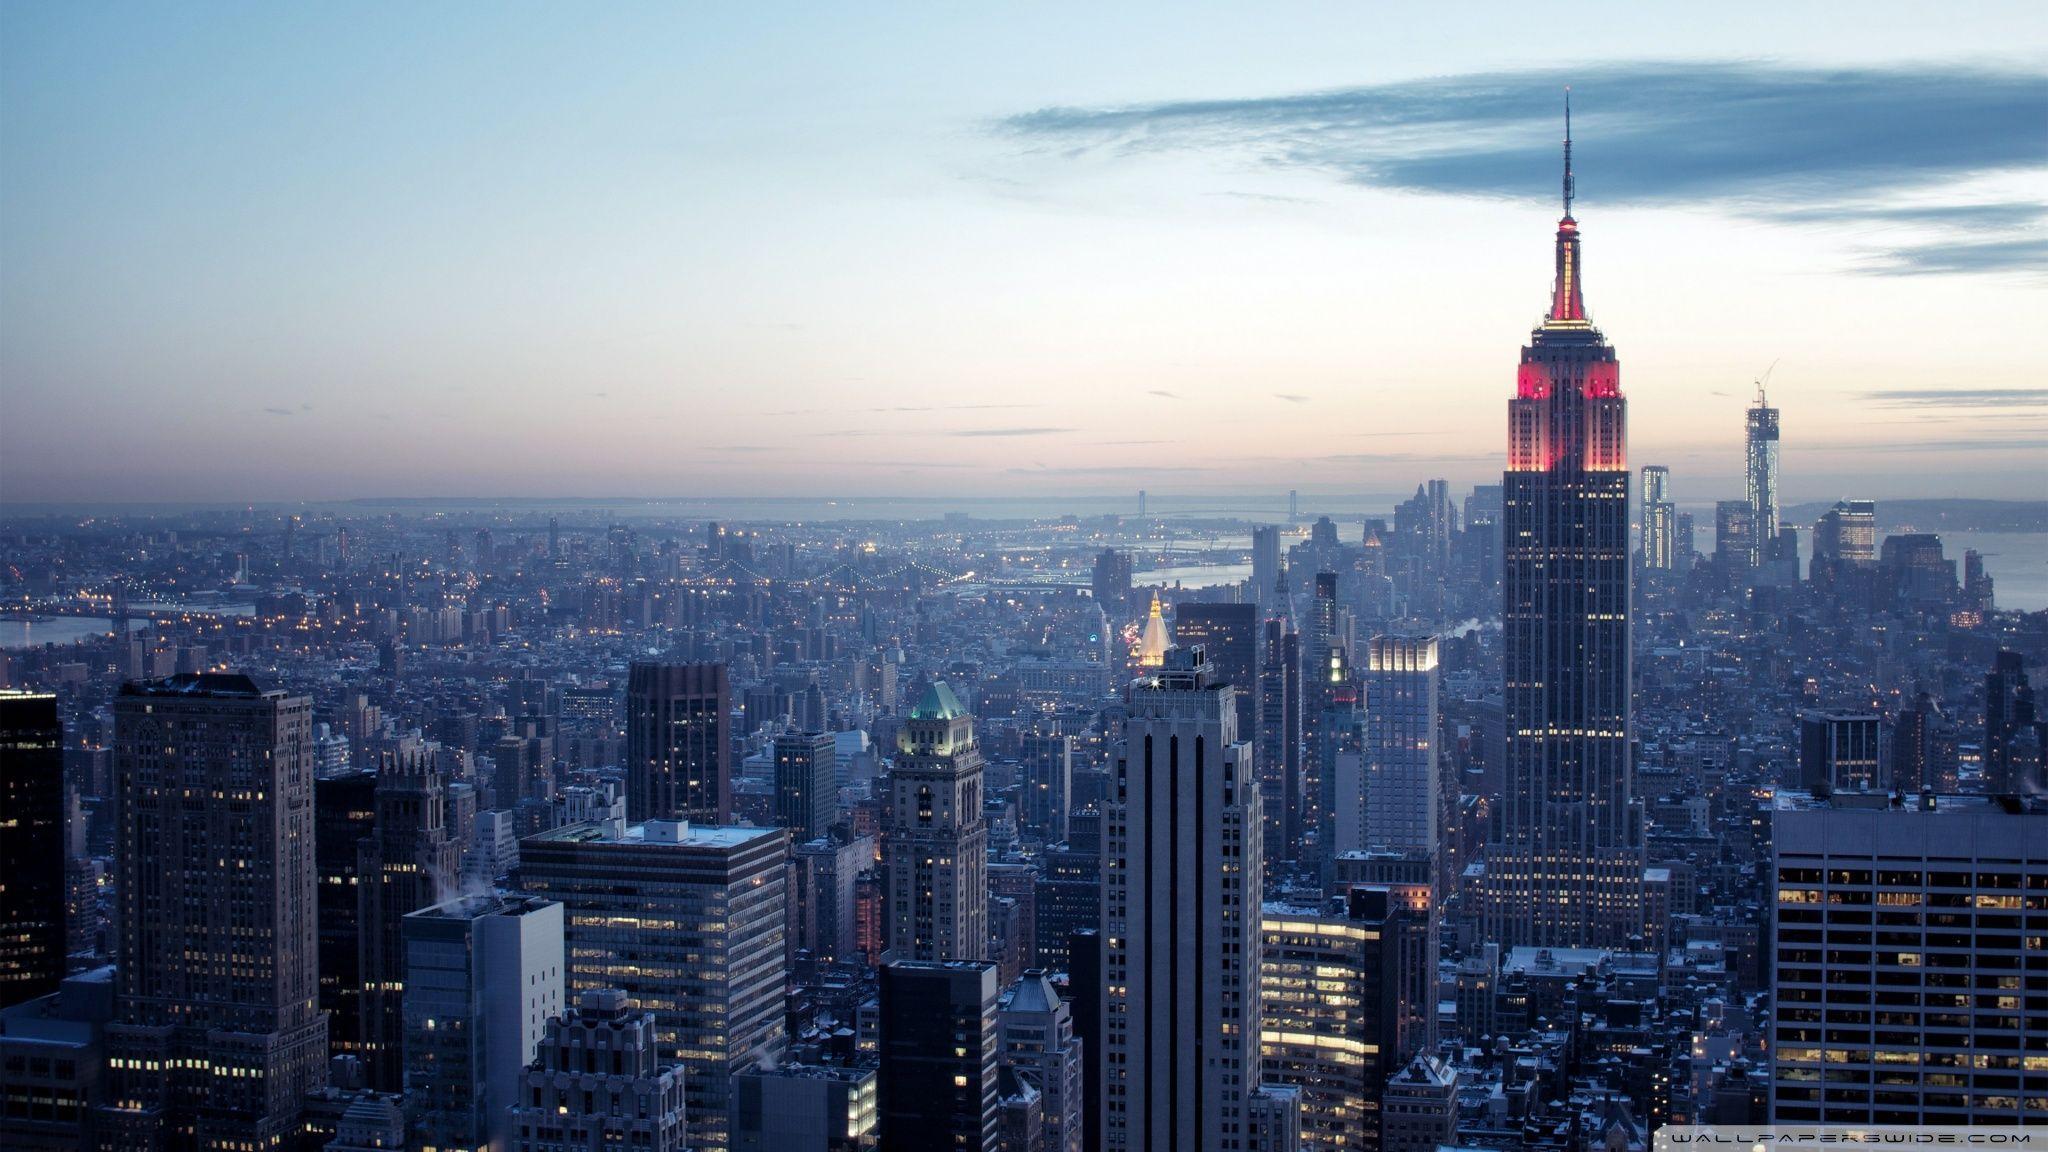 Hãy chiêm ngưỡng bức ảnh New York City đẹp như mơ với đầy đủ các tòa nhà cao tầng, đèn đường phố sáng rực và tiếng xe cộ ầm ĩ. Tải ngay hình nền New York City này và cảm nhận sự sống động và sức nóng của thành phố vô địch này.